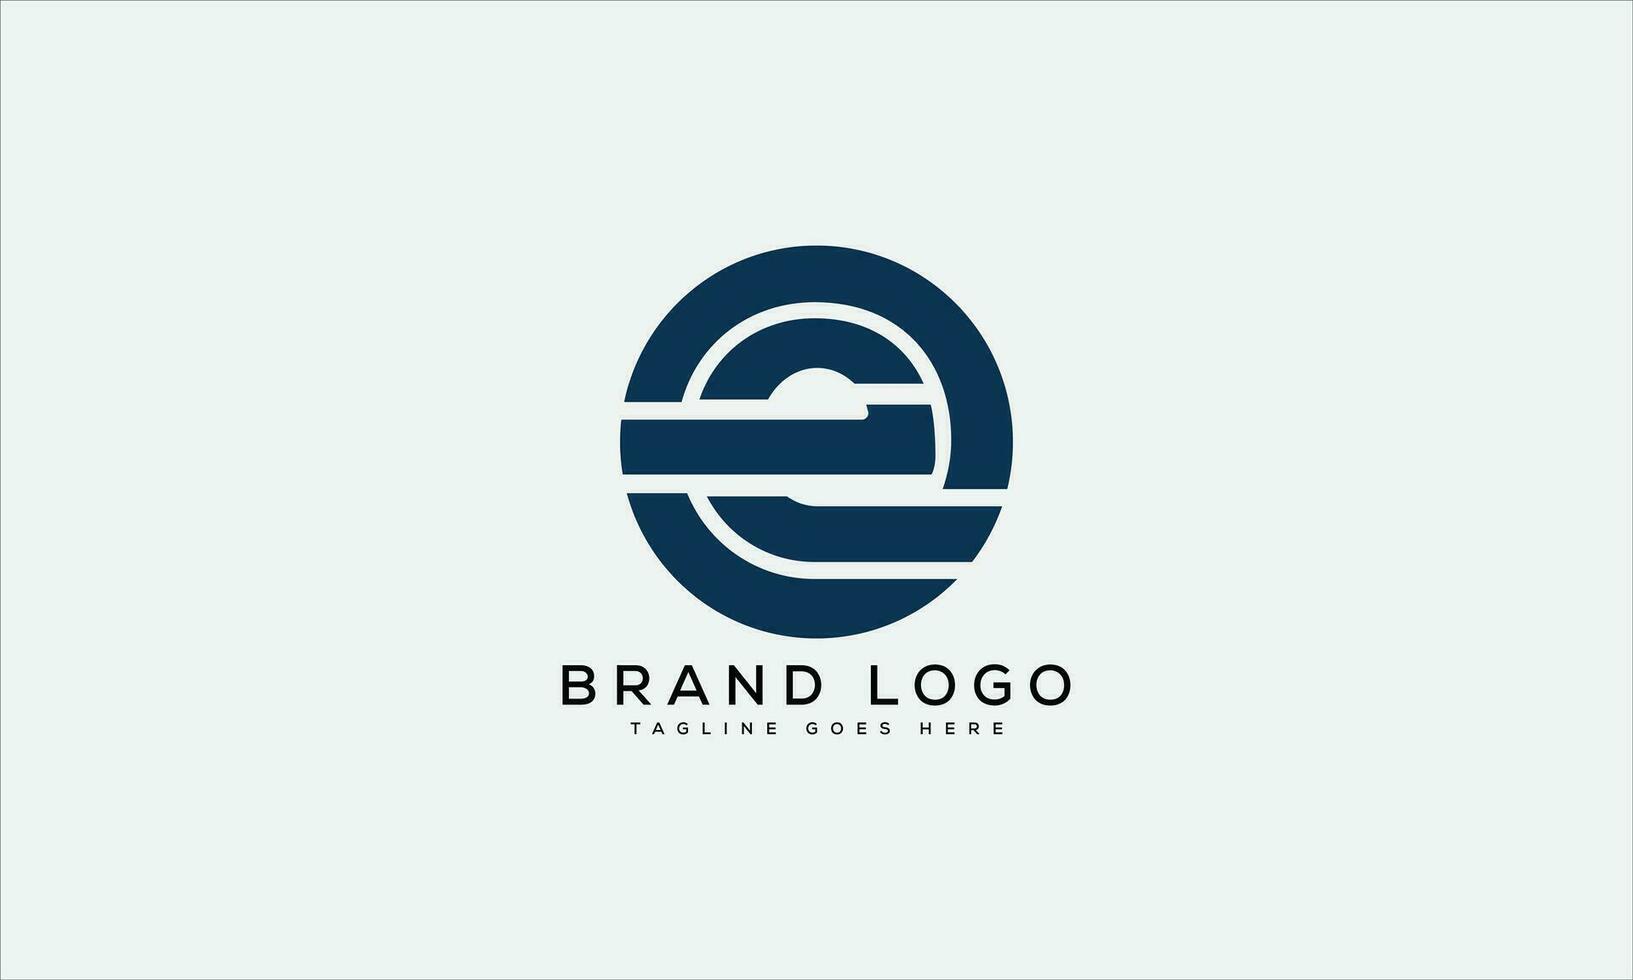 letter E logo design vector template design for brand.